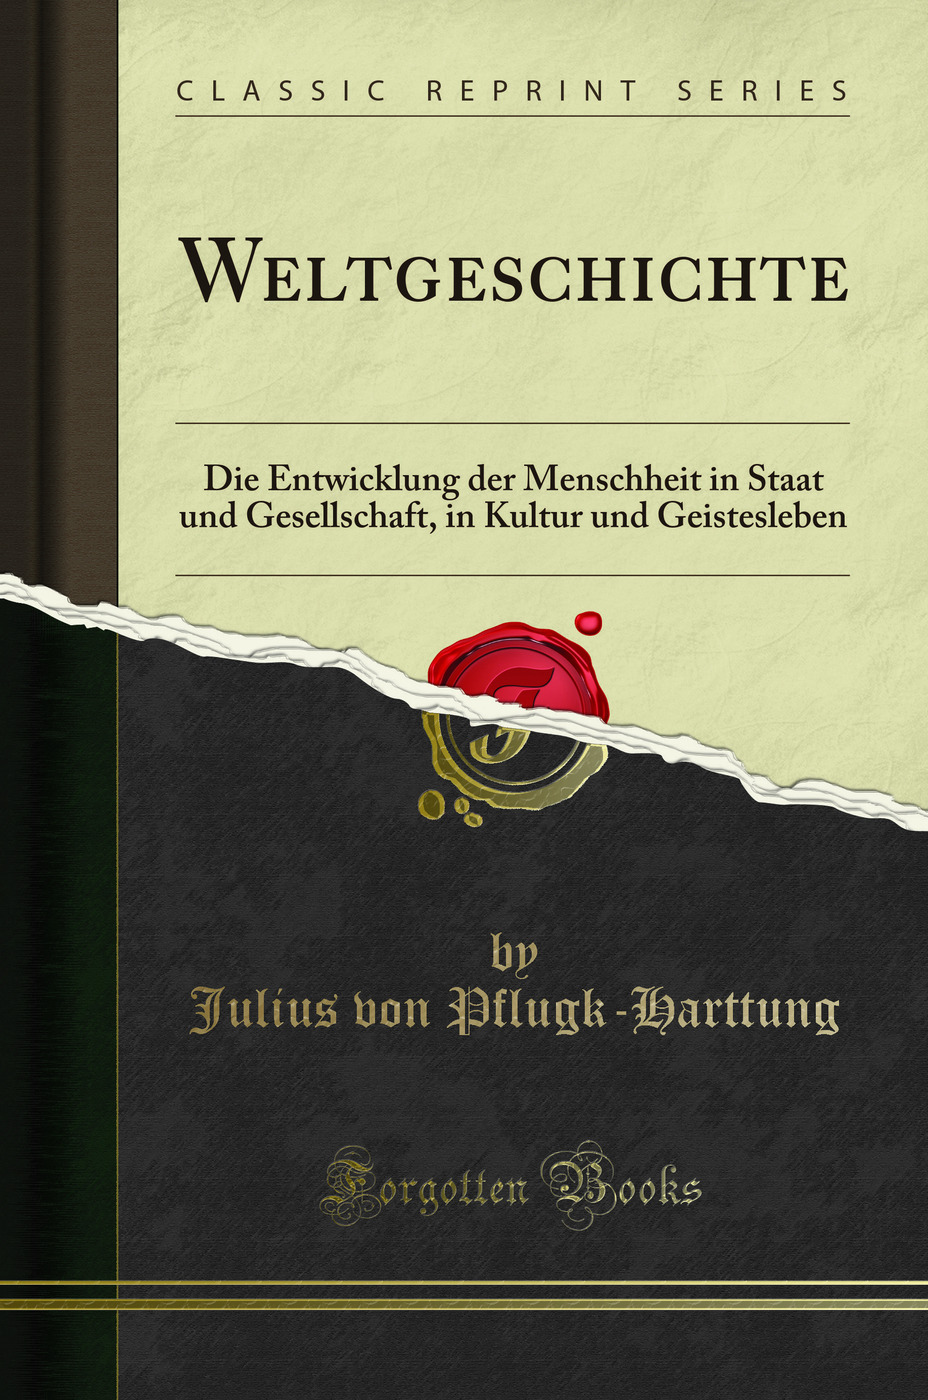 Weltgeschichte: Die Entwicklung der Menschheit in Staat und Gesellschaft - Julius von Pflugk-Harttung